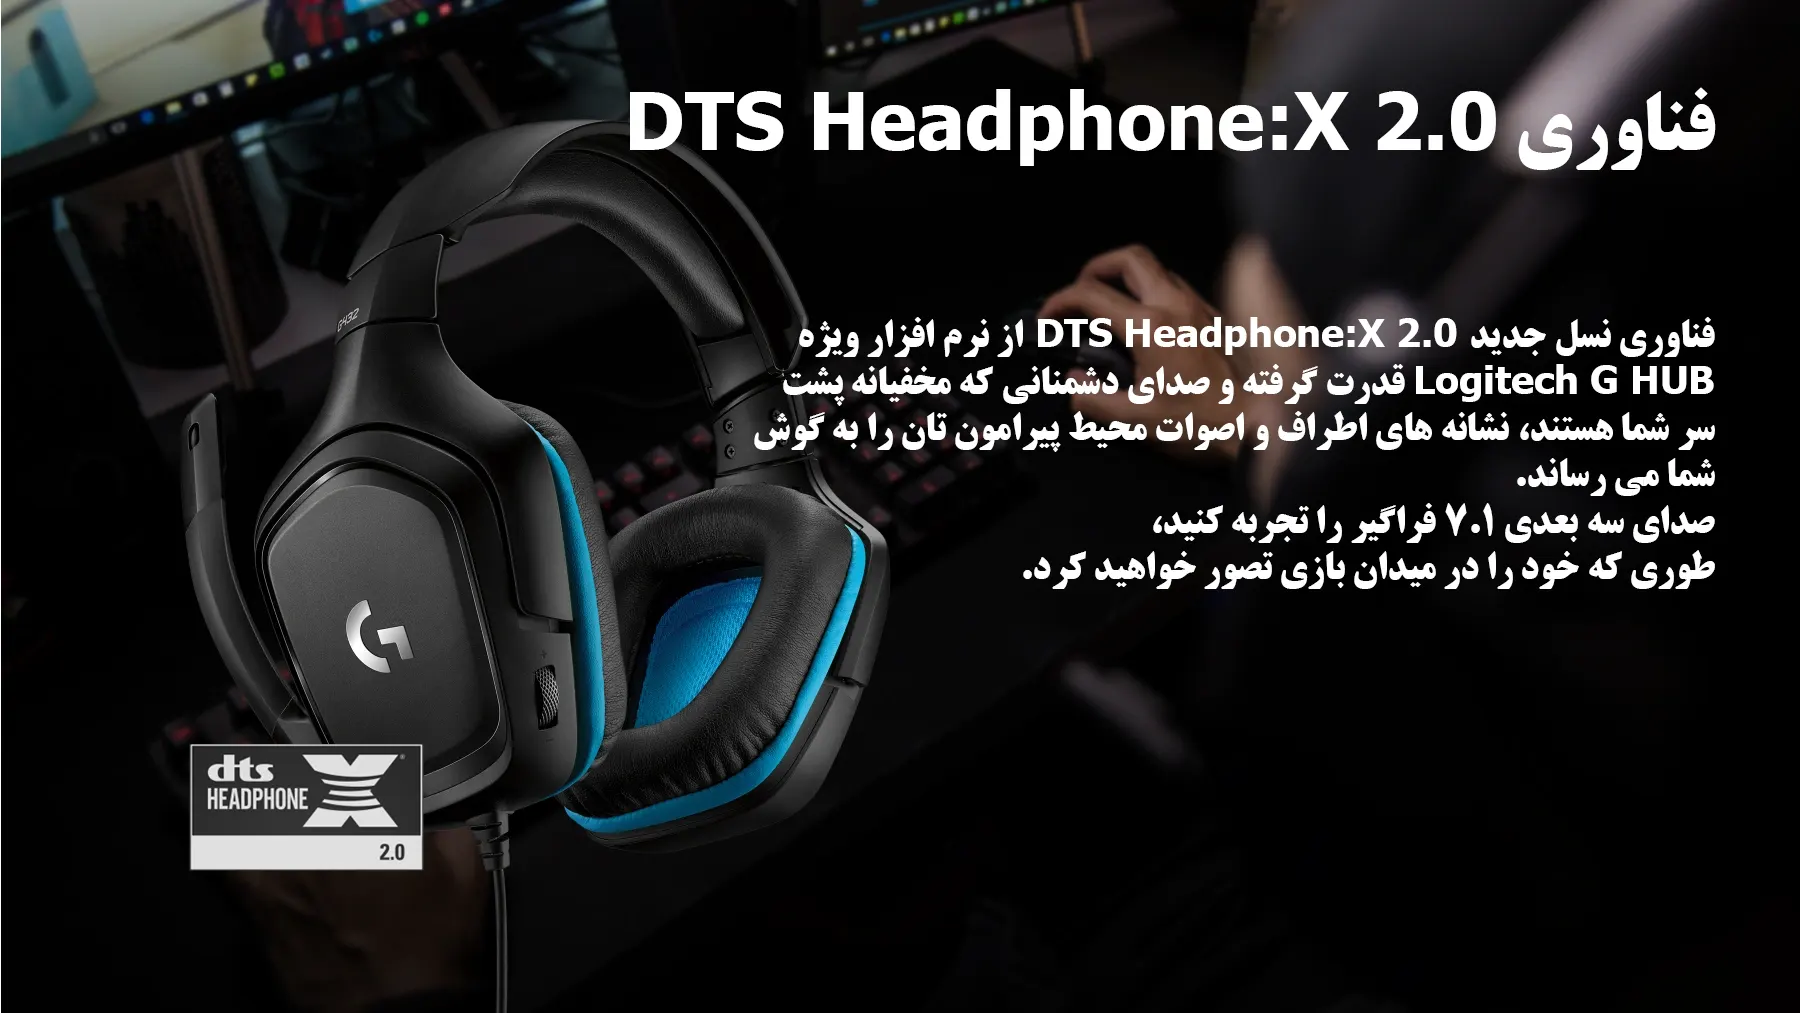 هدست گیمینگ لاجیتک Logitech G432 7.1 Surround Sound Gaming Headset